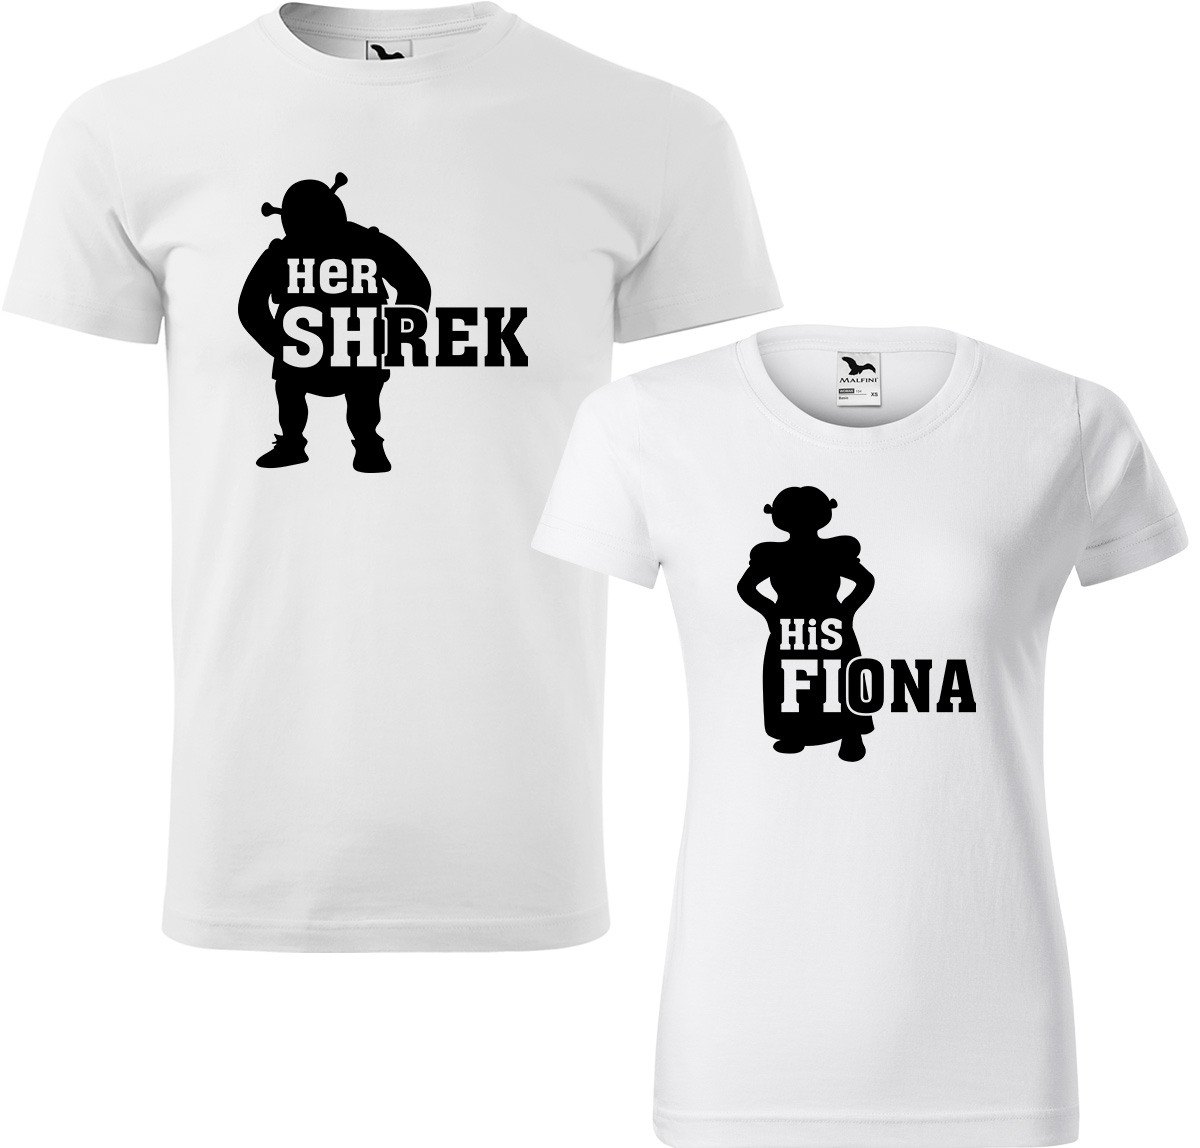 Trička pro páry - Shrek a Fiona Barva: Bílá (00), Velikost dámské tričko: S, Velikost pánské tričko: 2XL